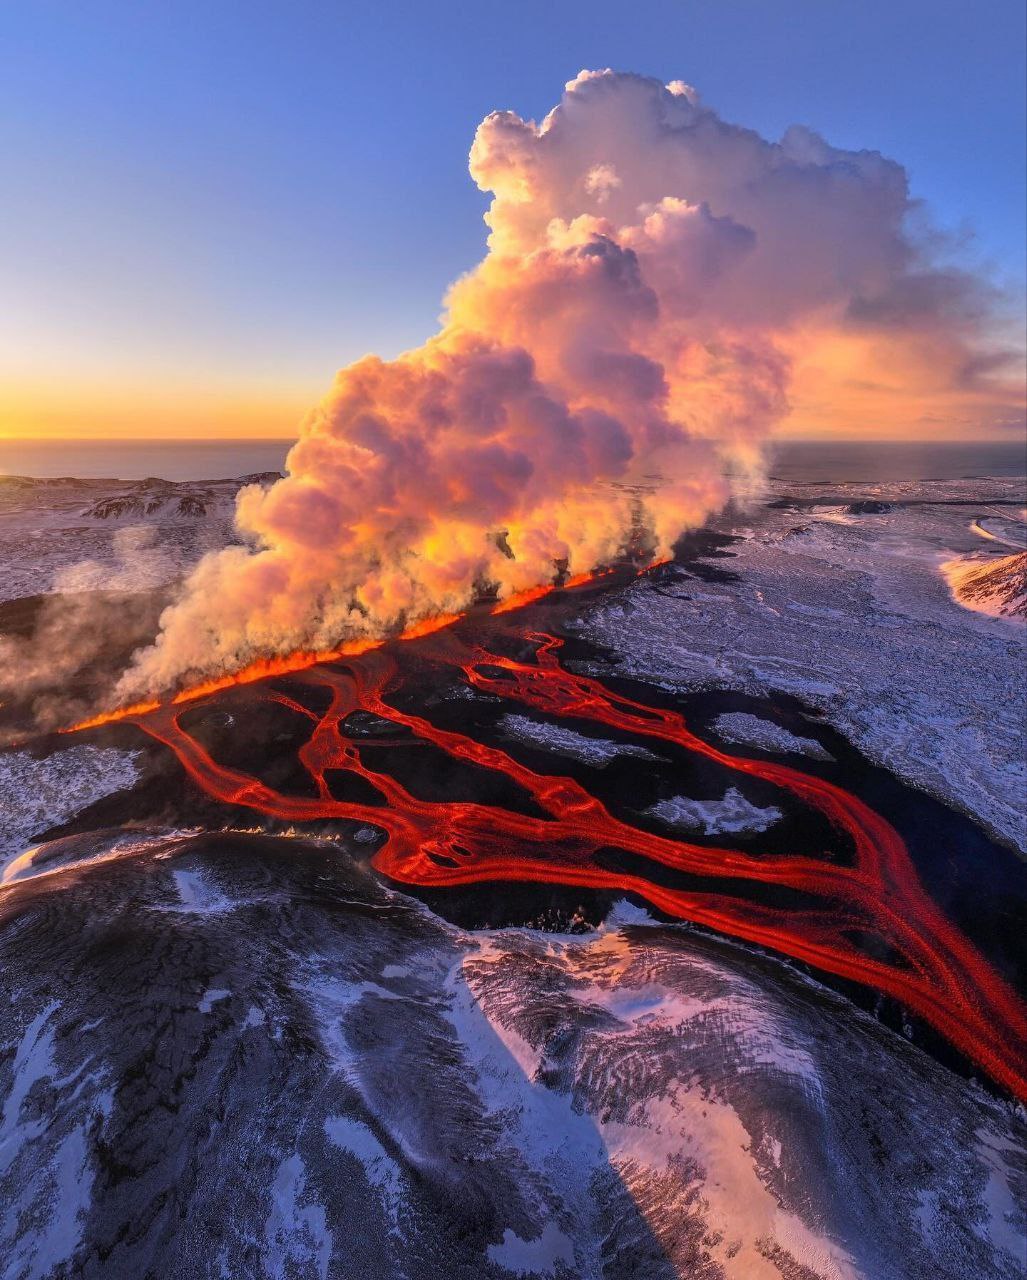 تصاویر جالب از فوران آتشفشان در ایسلند/ عکس